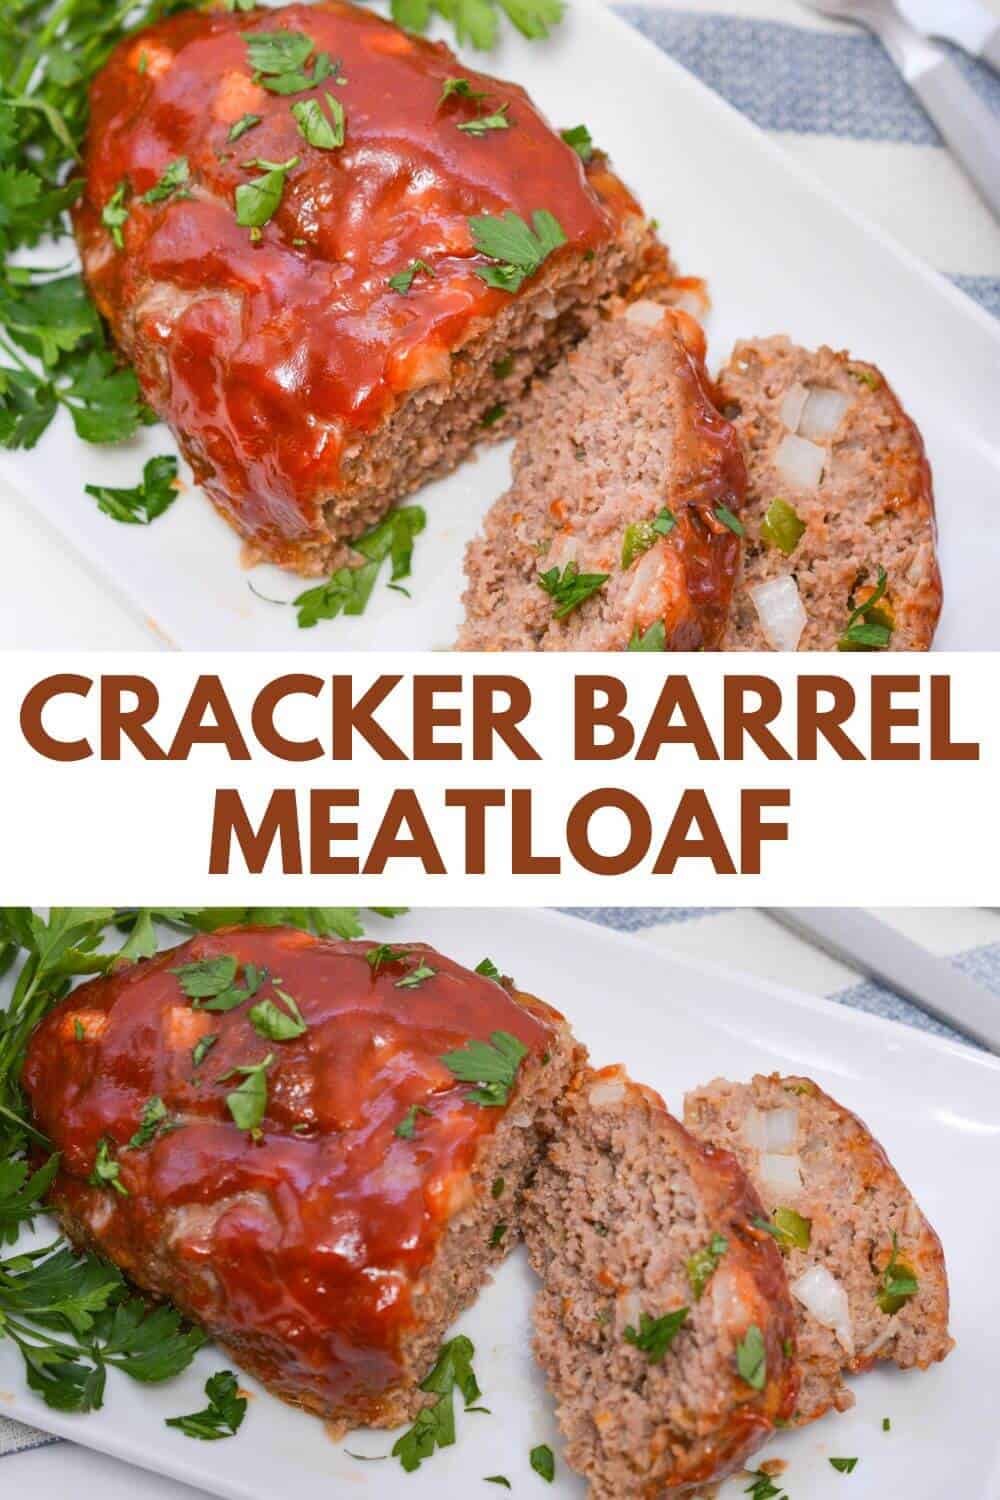 Cracker barrel meatloaf on a white platter.